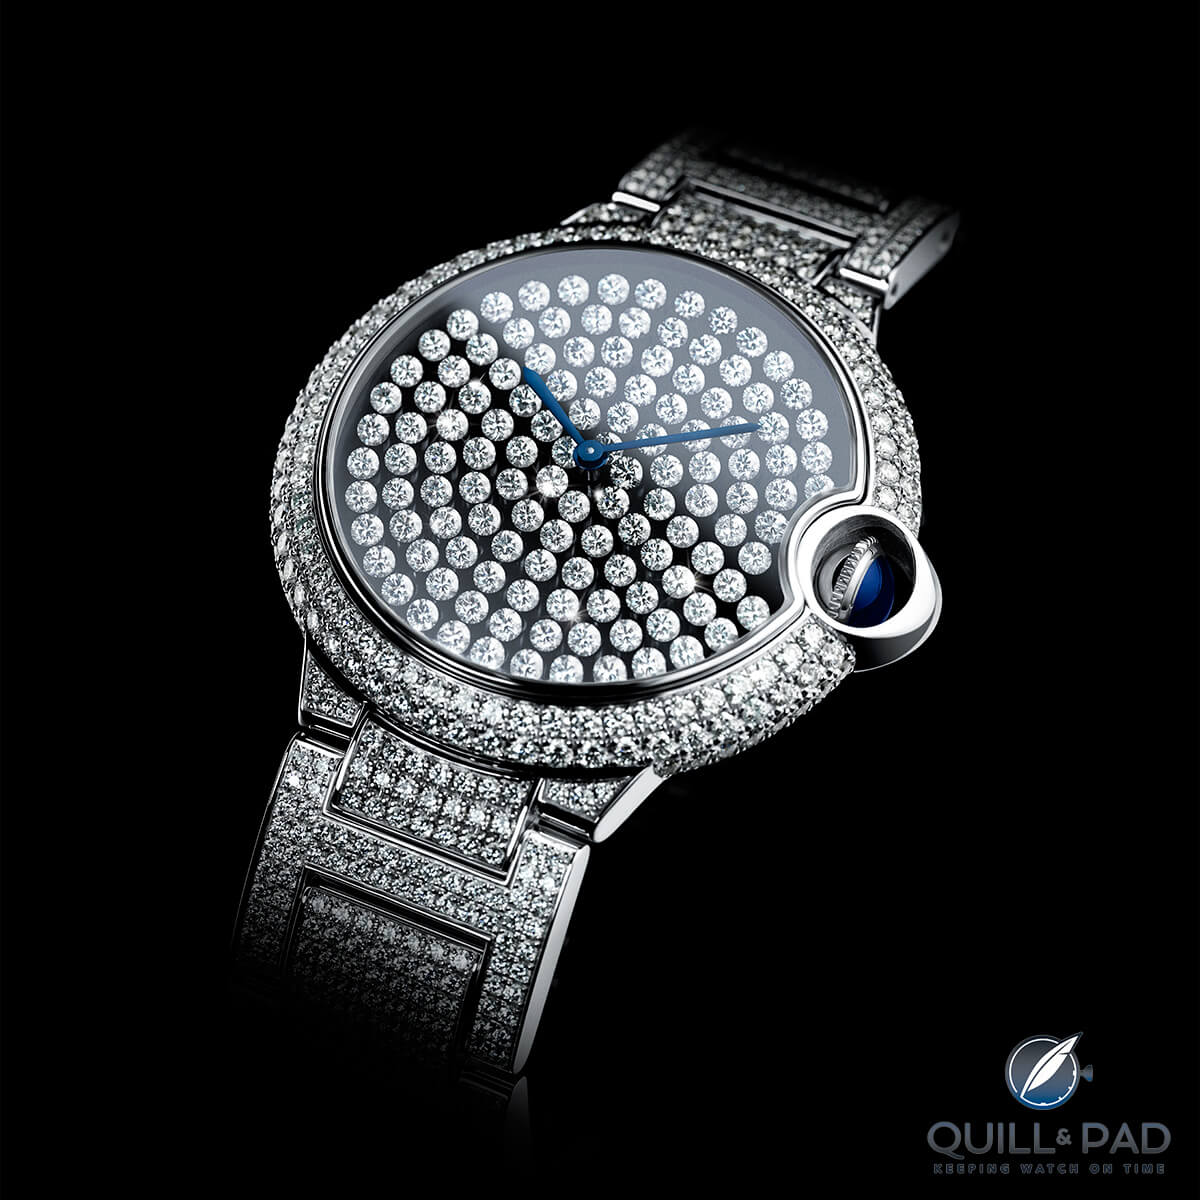 Ballon Bleu de Cartier Serti Vibrant replica watch